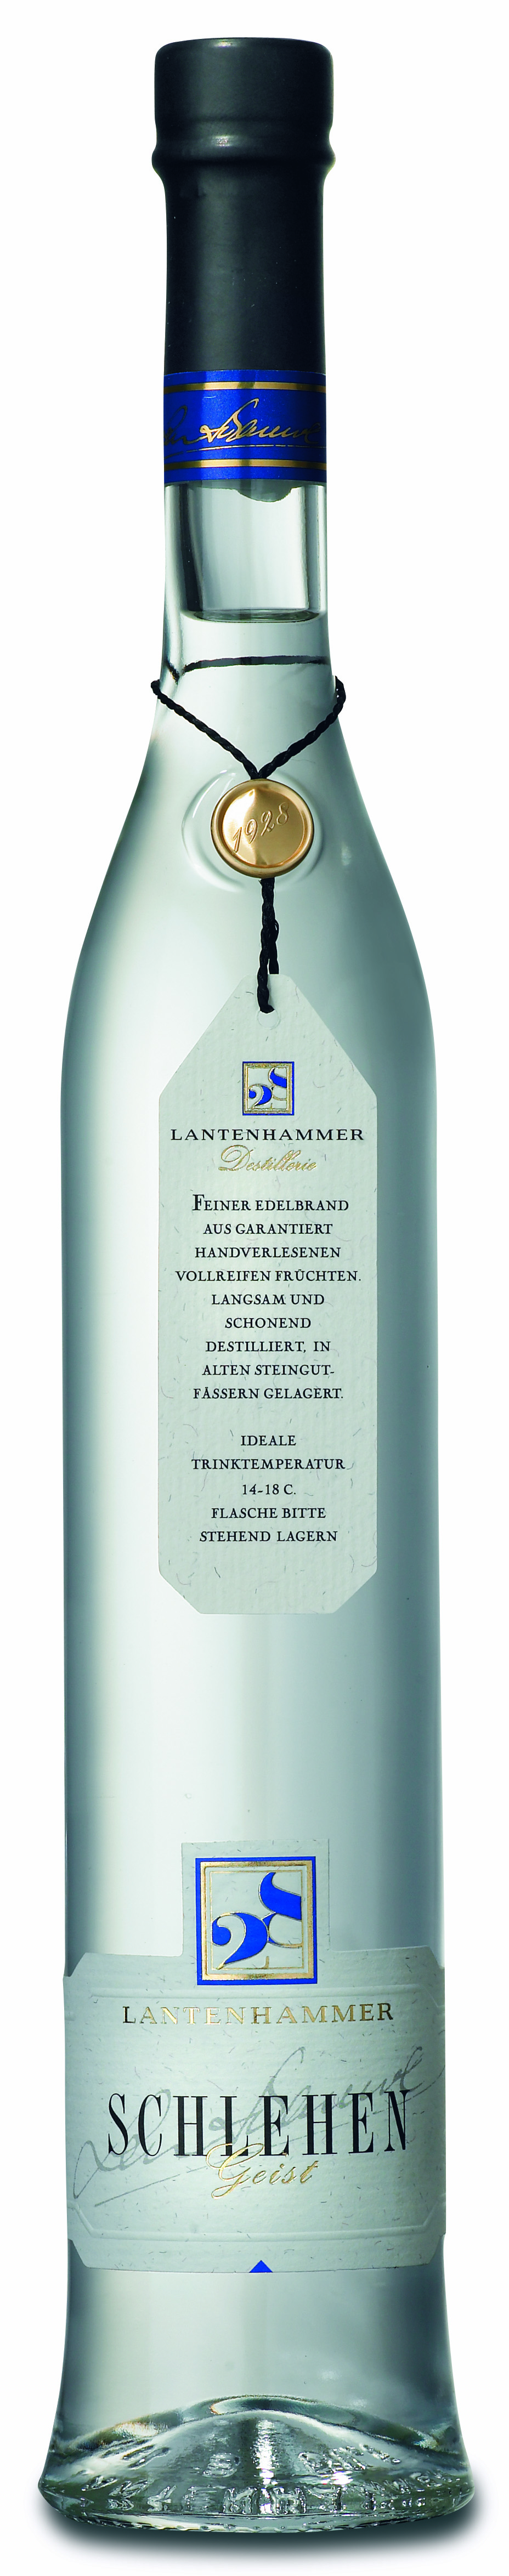 Lantenhammer Schlehengeist